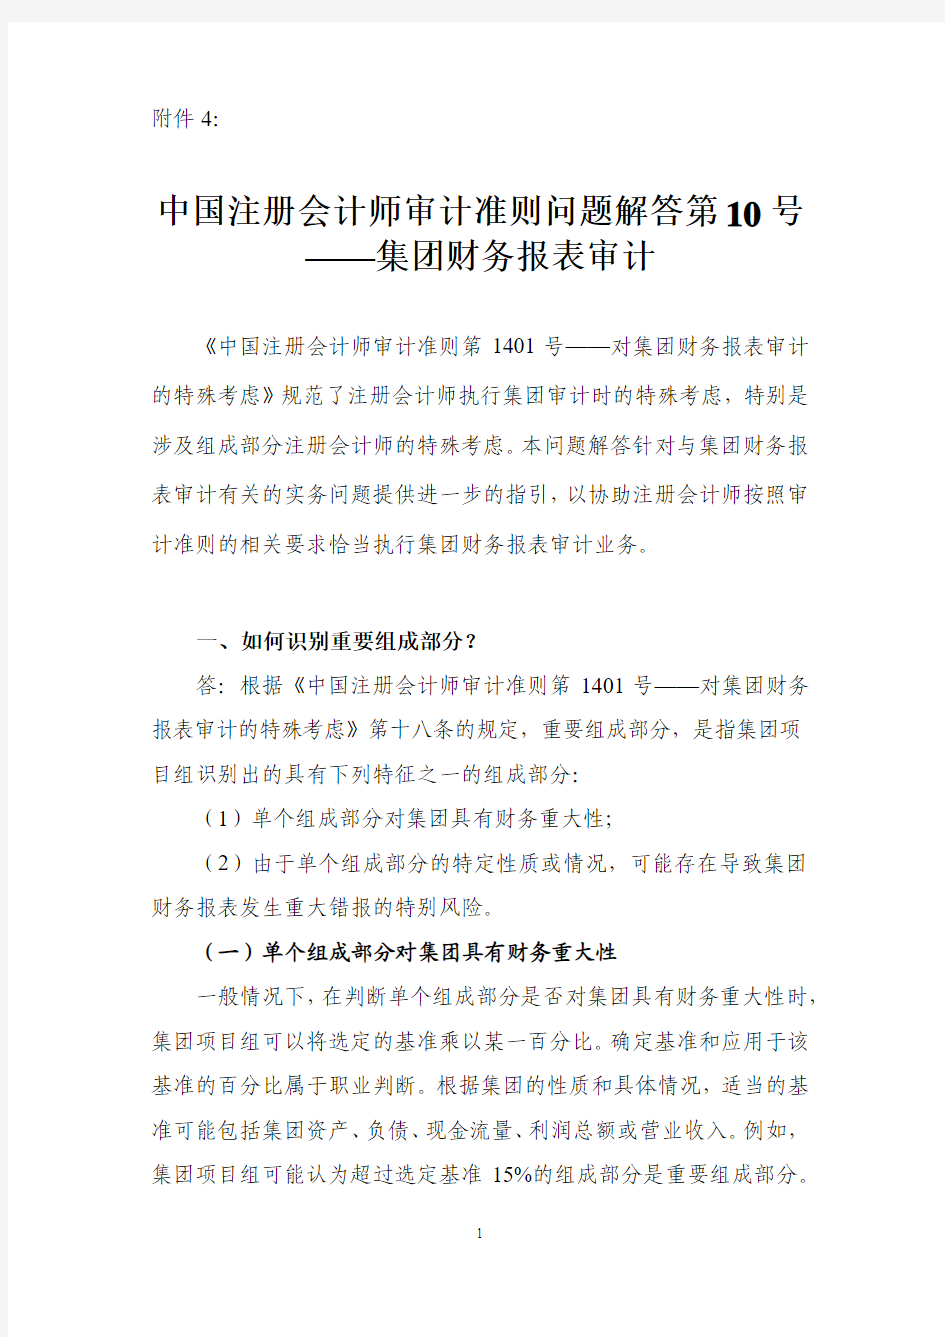 中国注册会计师审准则问题解答第 10 号—— 集团财务报表审计